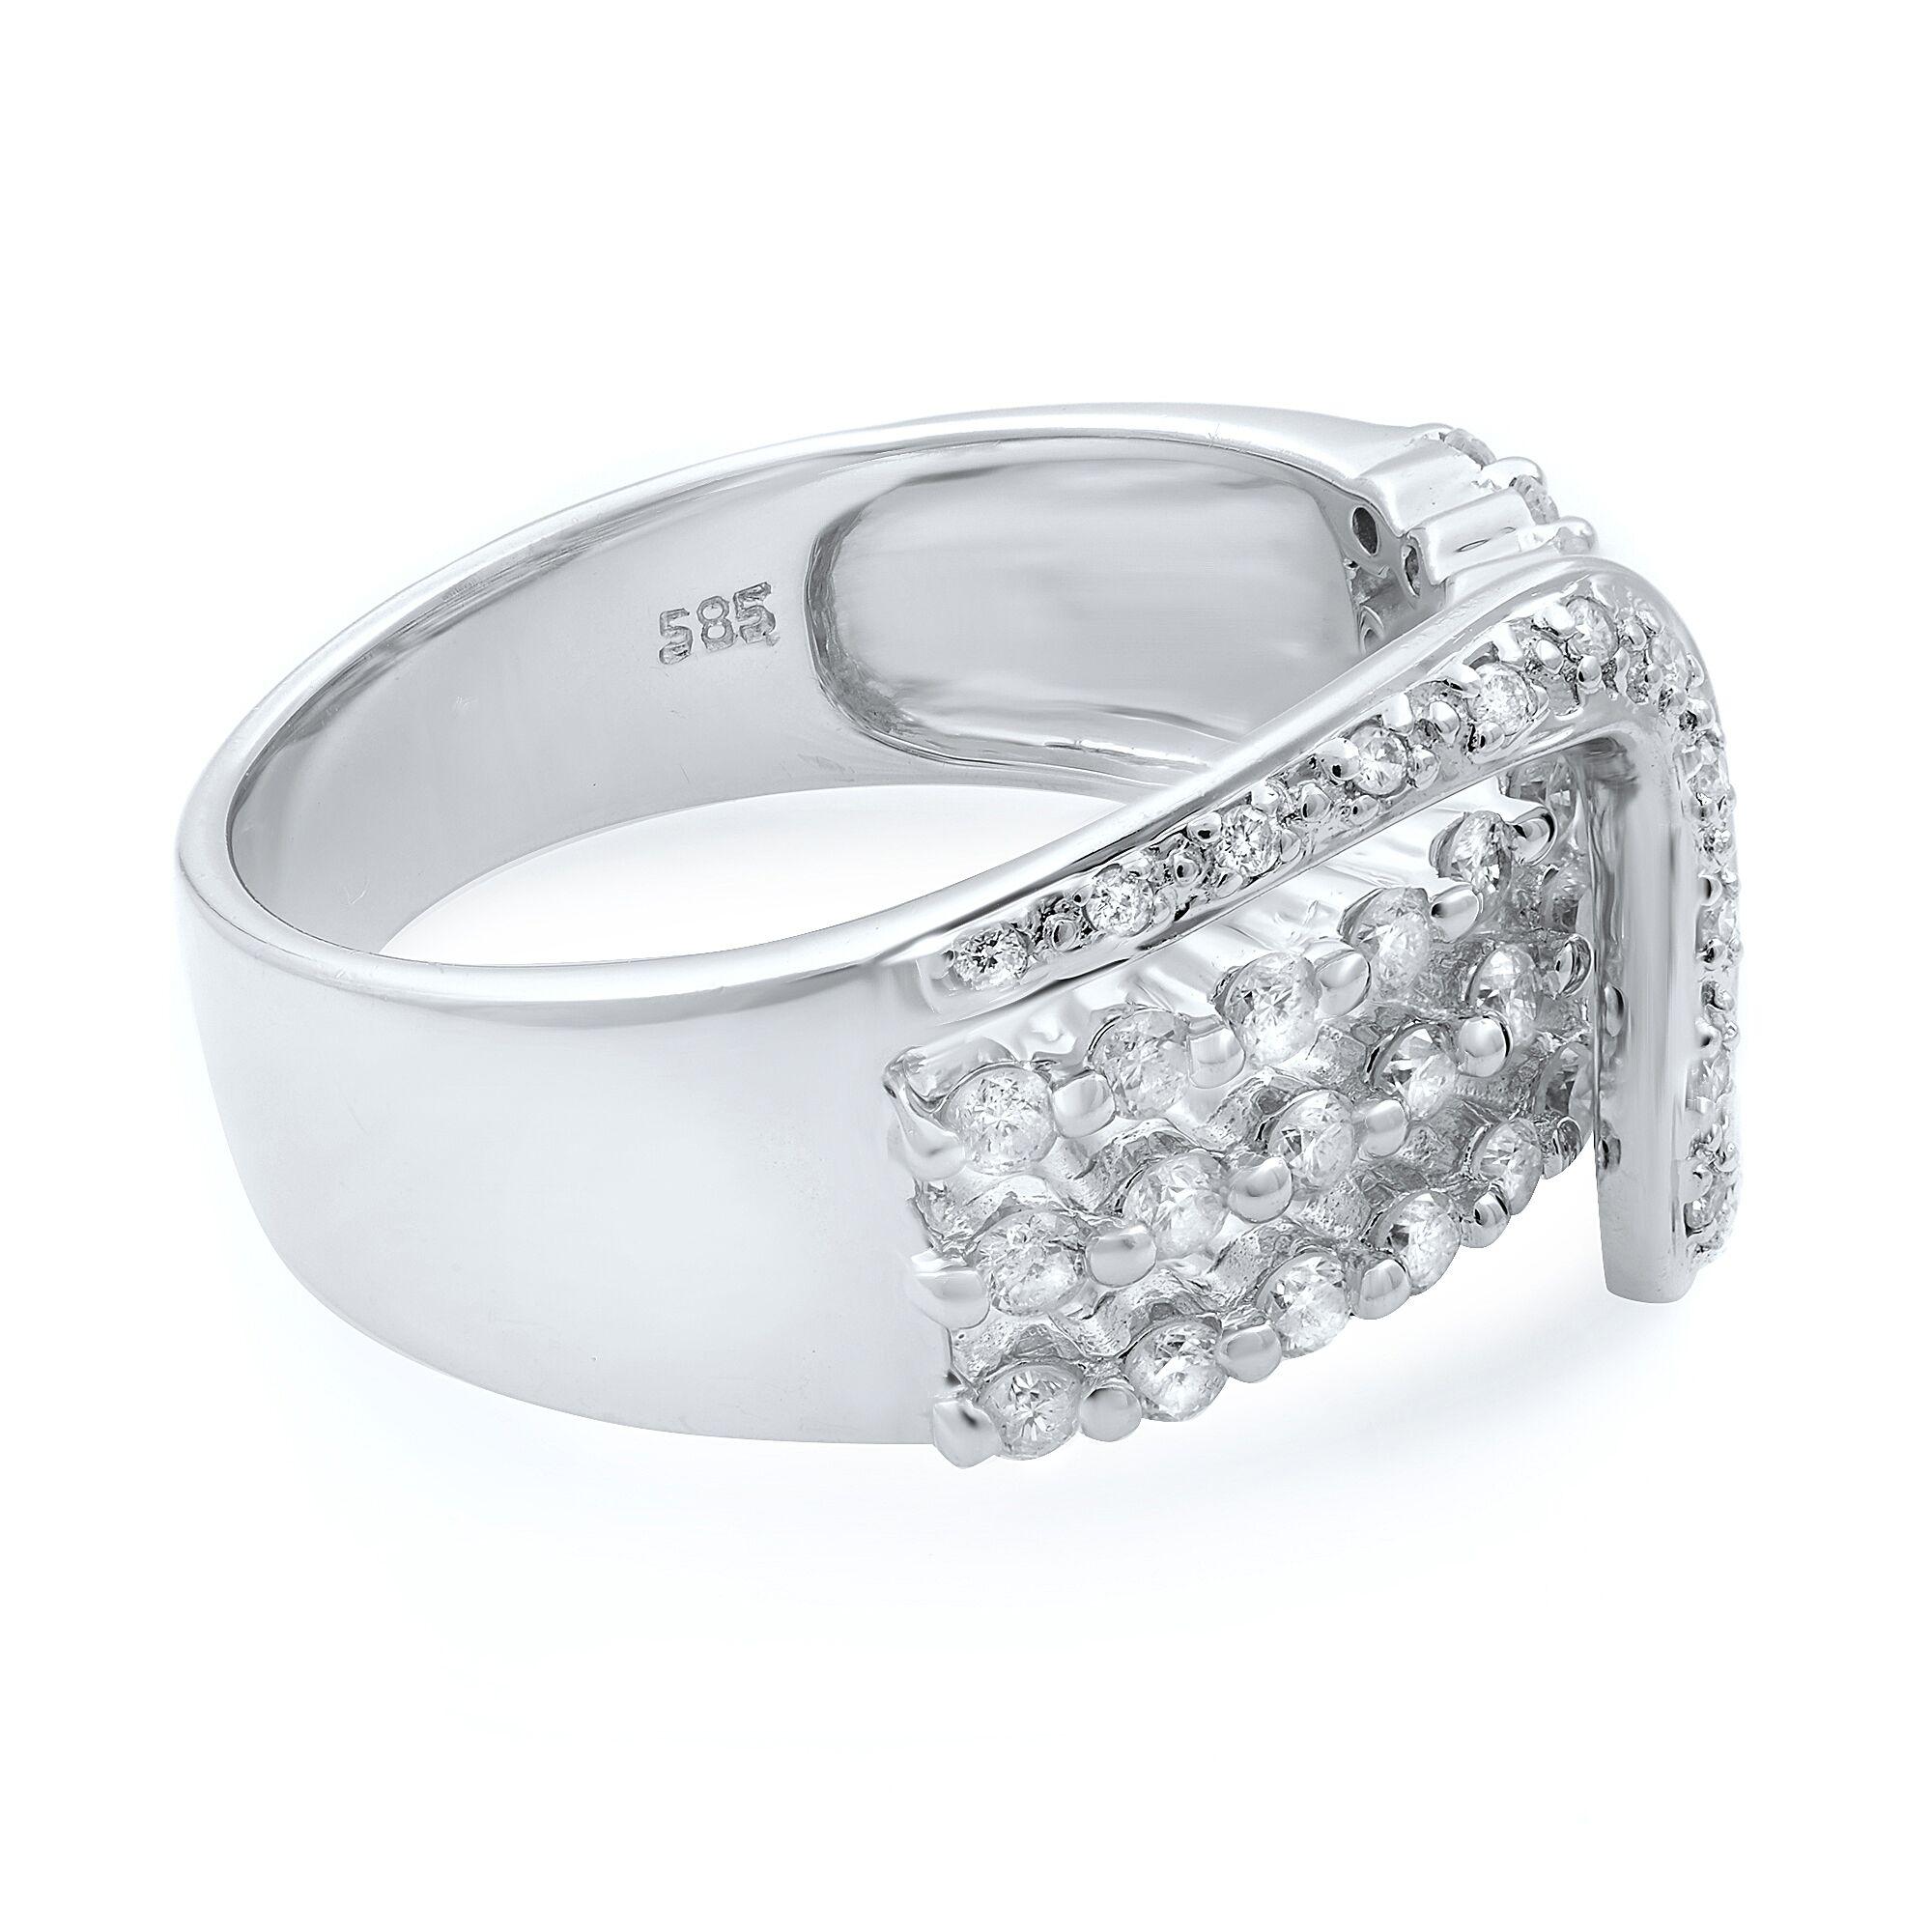 Modern Rachel Koen Diamond Ladies Ring 14K White Gold 0.75 Cttw Size 7.5 For Sale